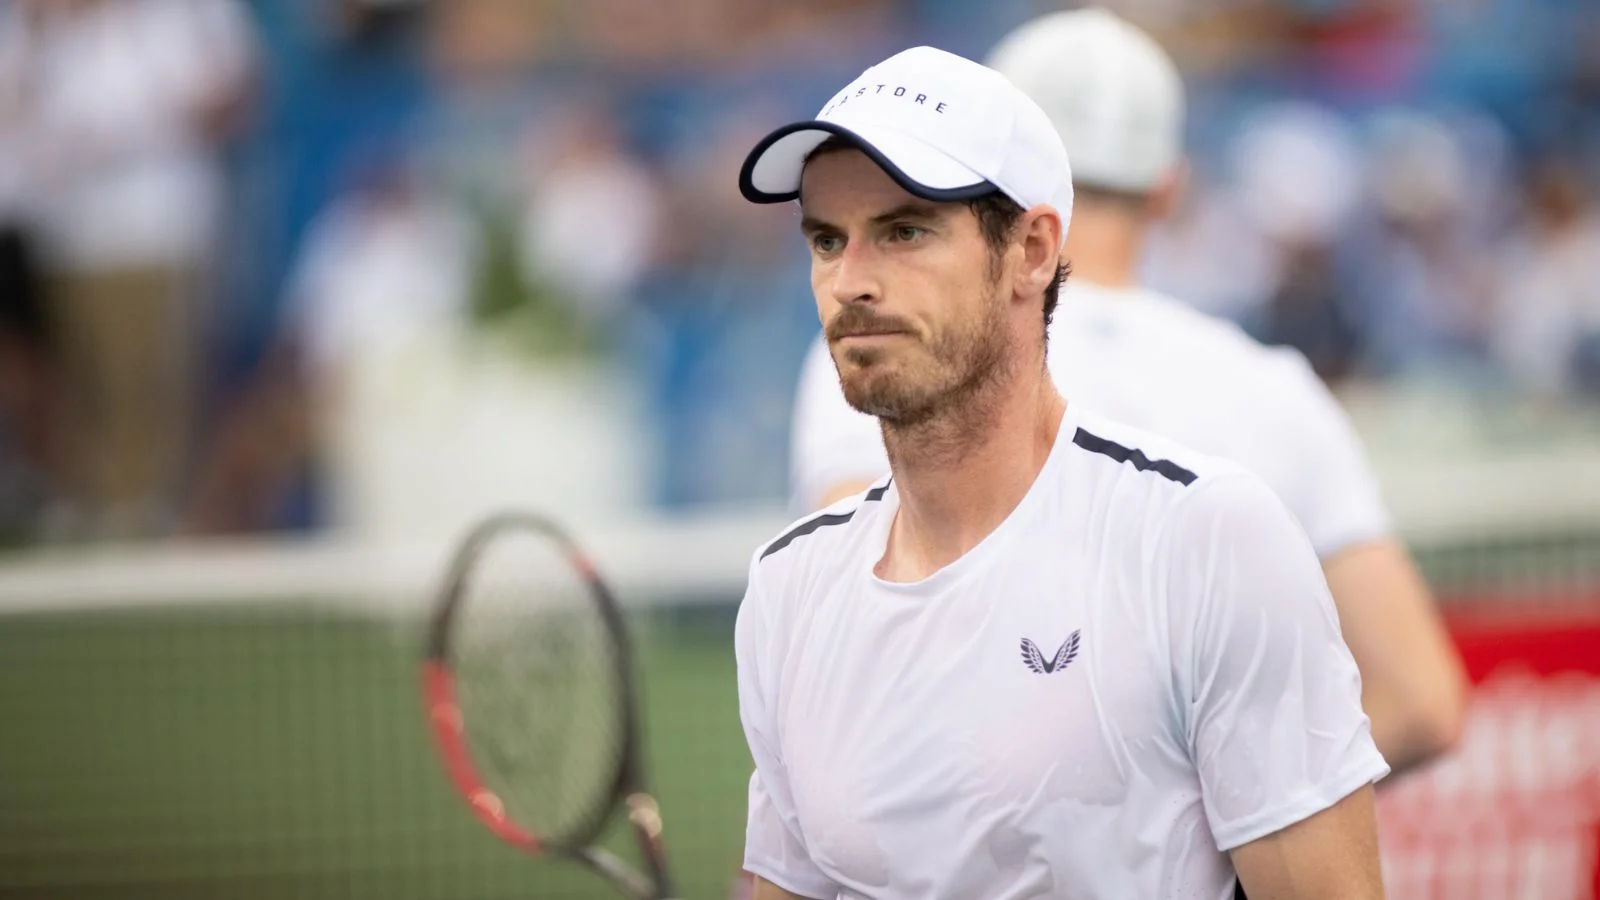 Andy Murray To Team Up With Emma Raducanu At Wimbledon